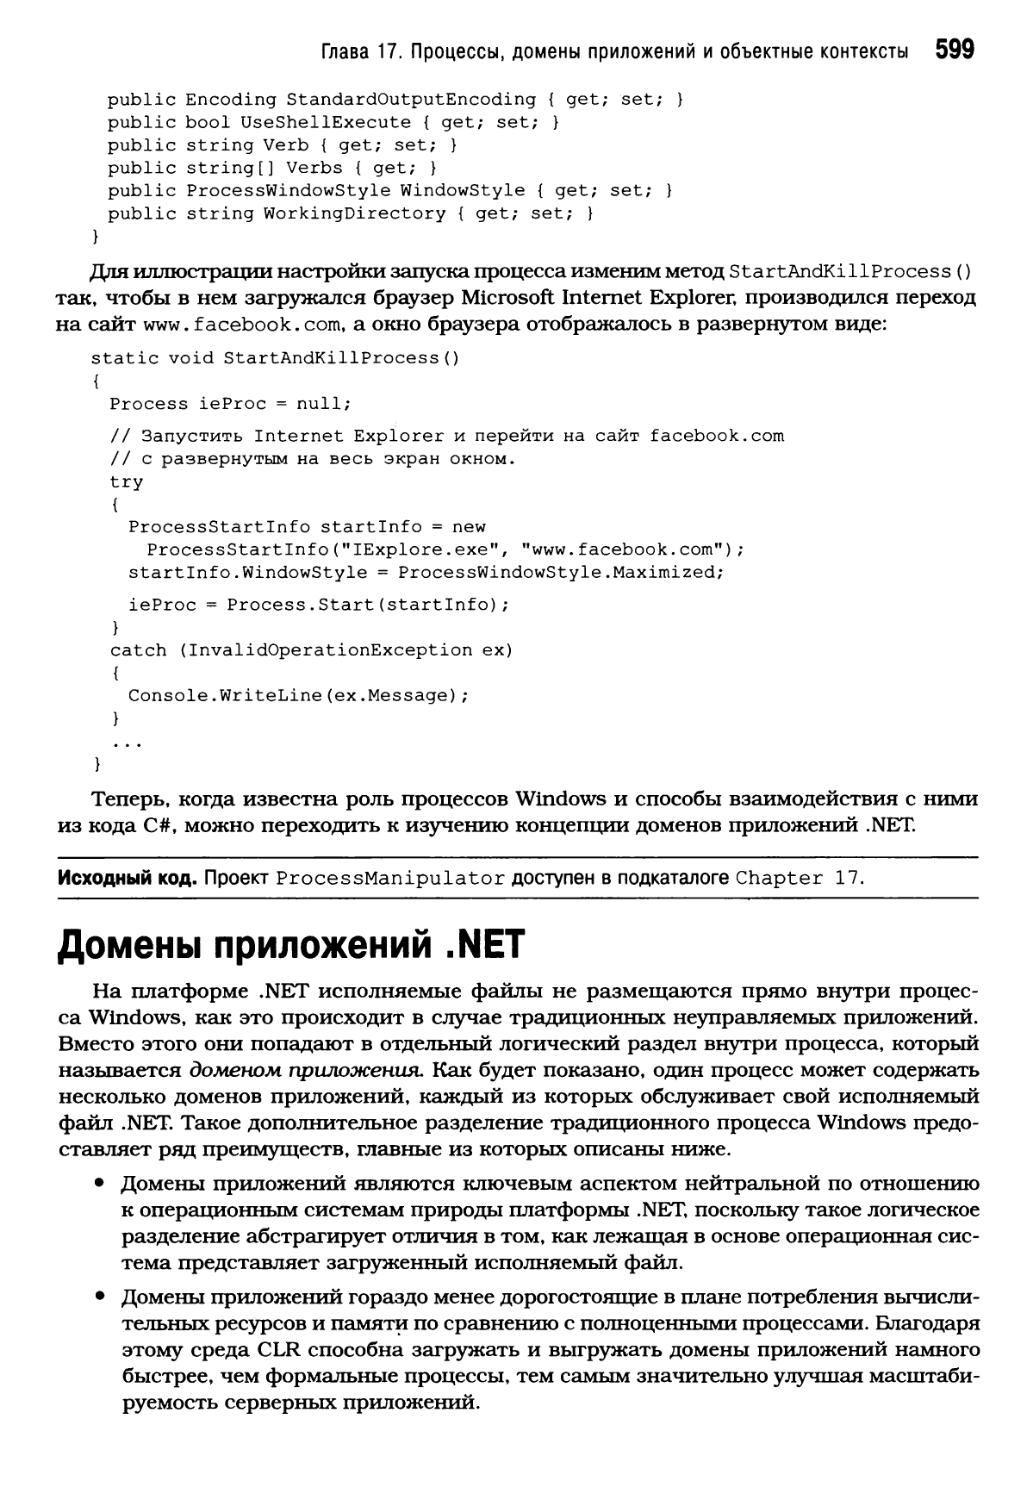 Домены приложений .NET